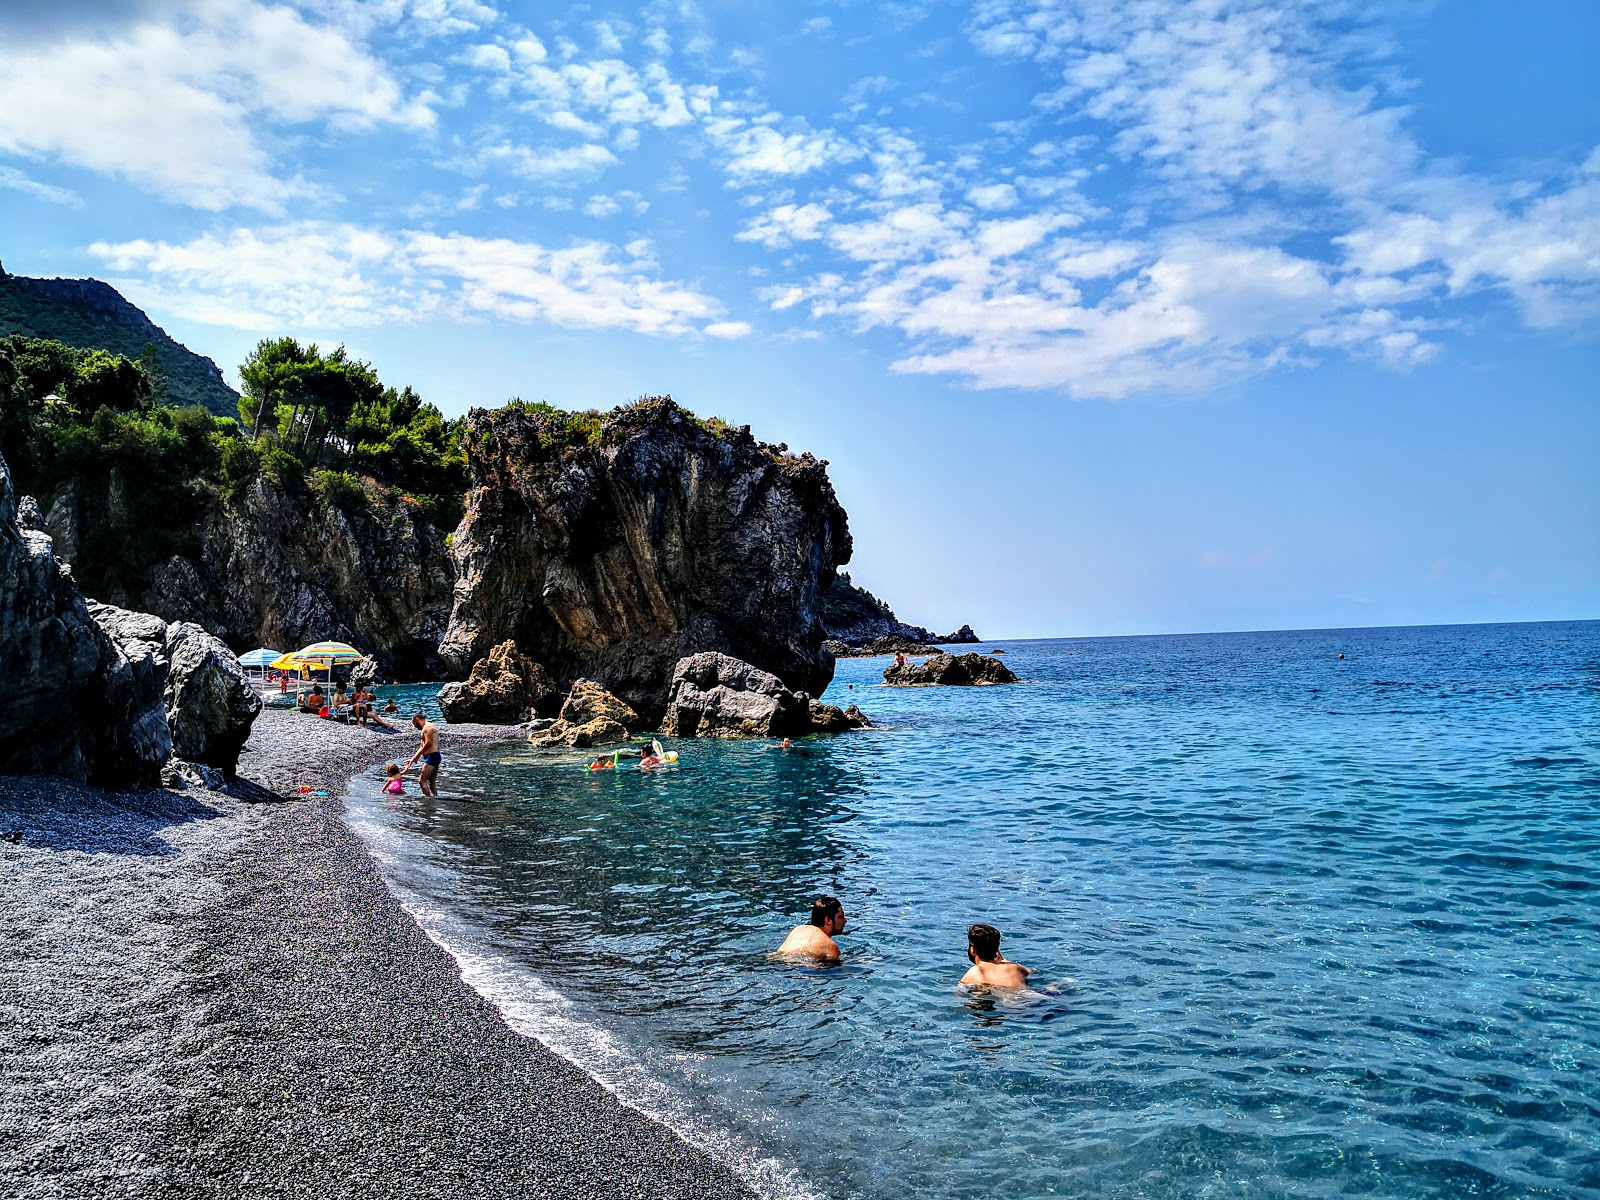 Spiaggia di Santa Teresa'in fotoğrafı gri ince çakıl taş yüzey ile